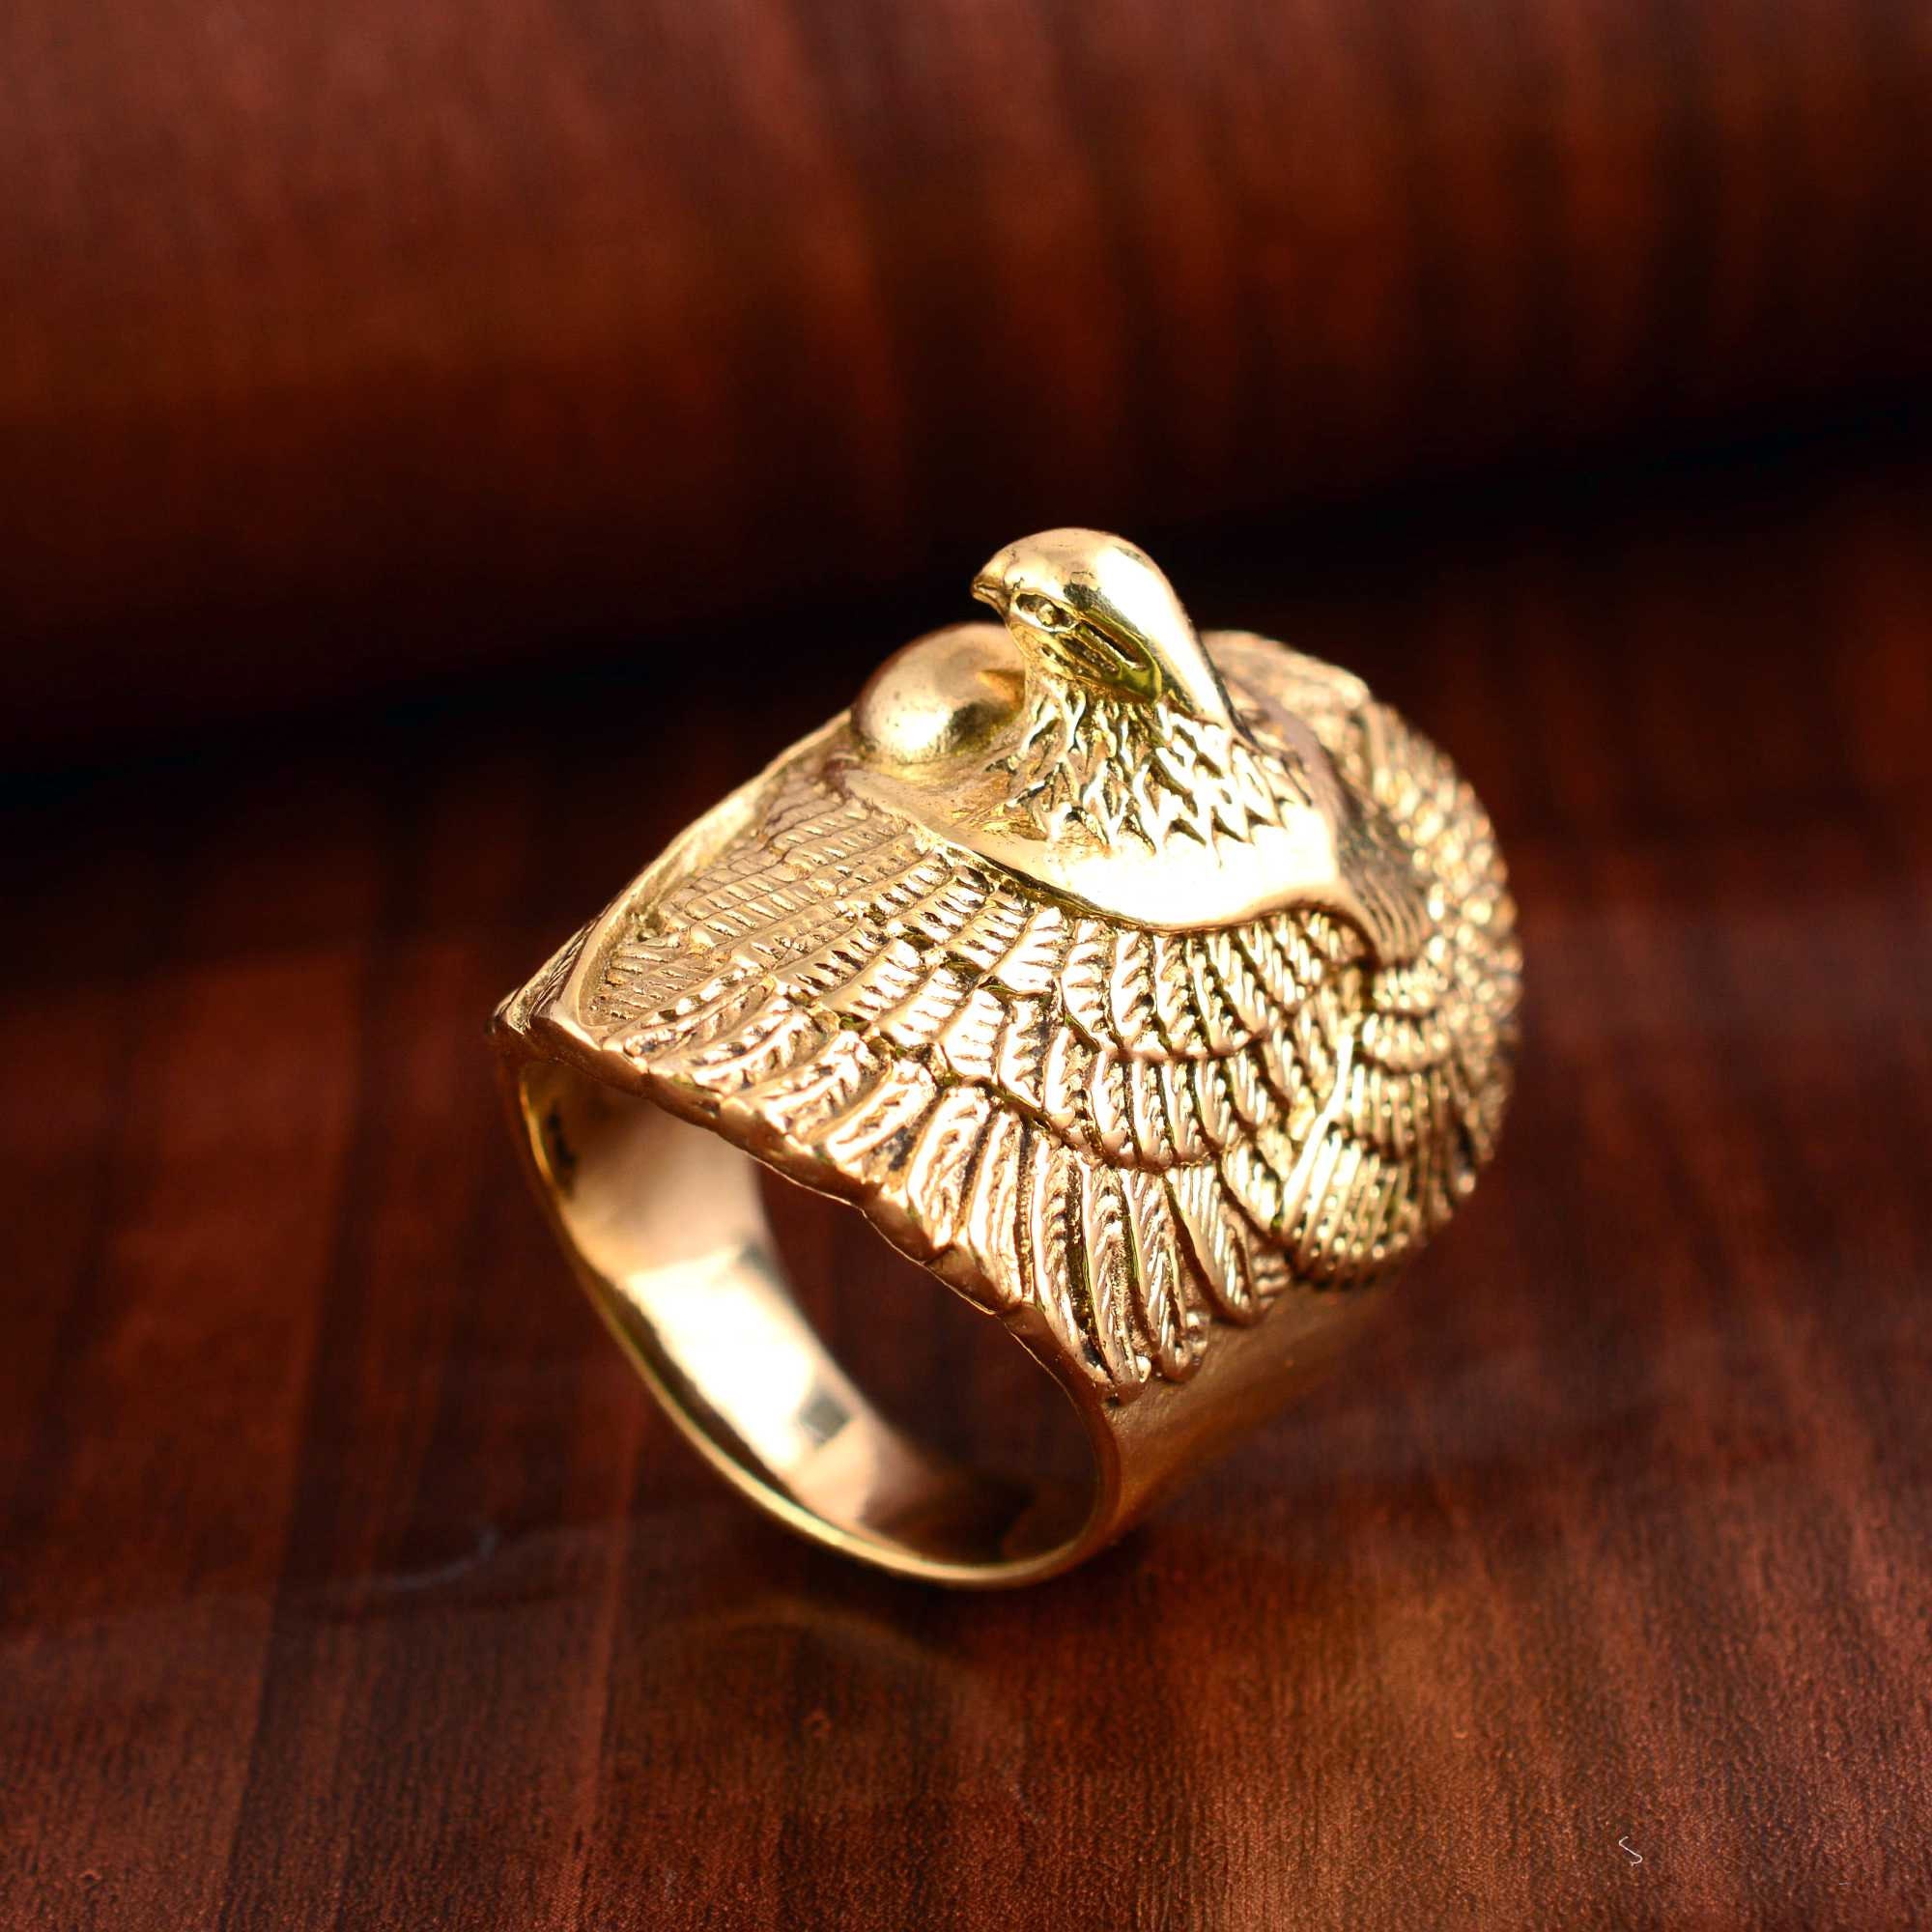 Ashok staembh Ring | Gold ring designs, Rings for men, Ring designs